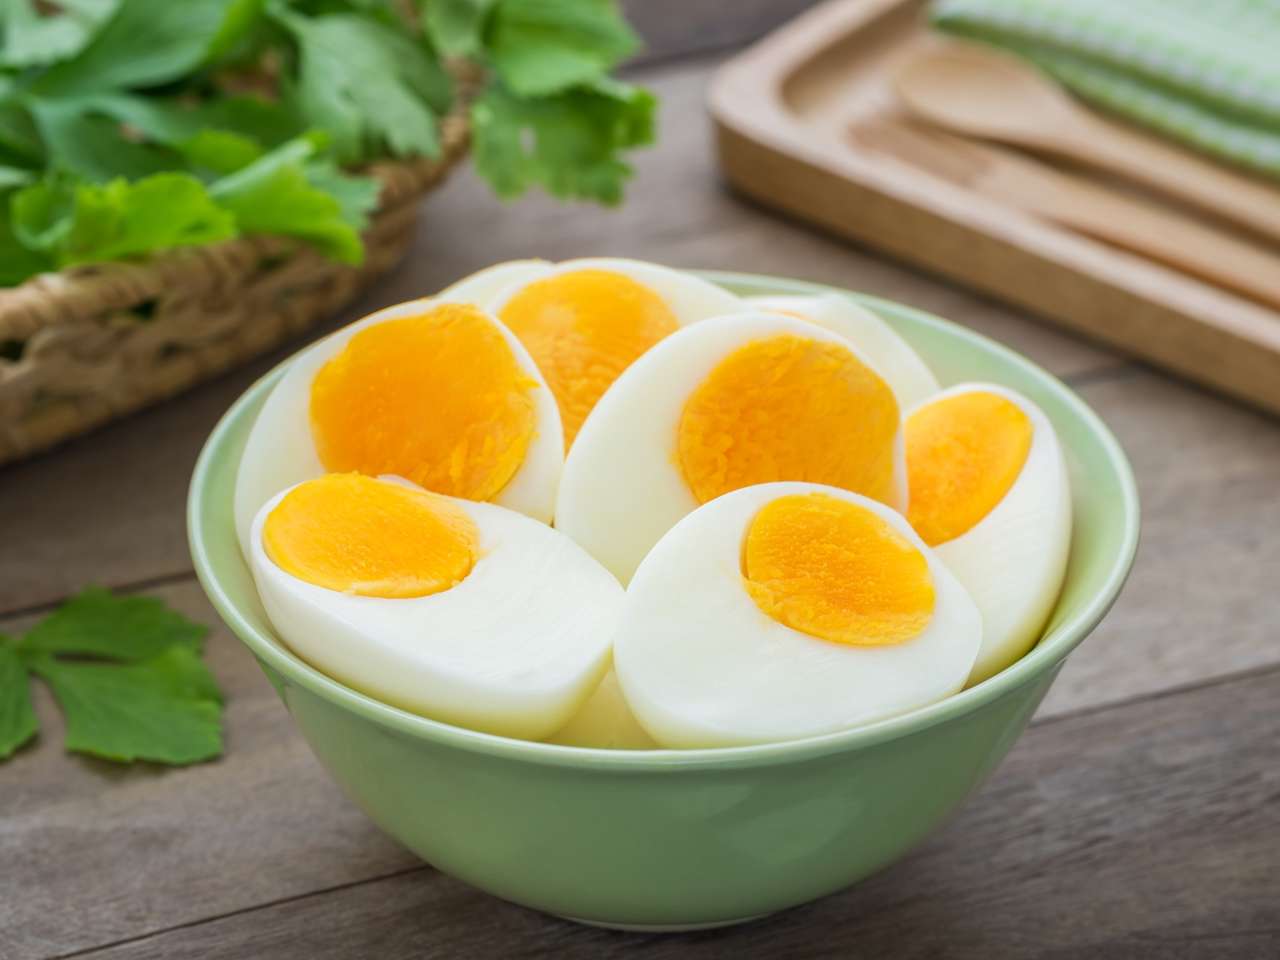 Receta fácil para hacer huevos duros en la airfryer